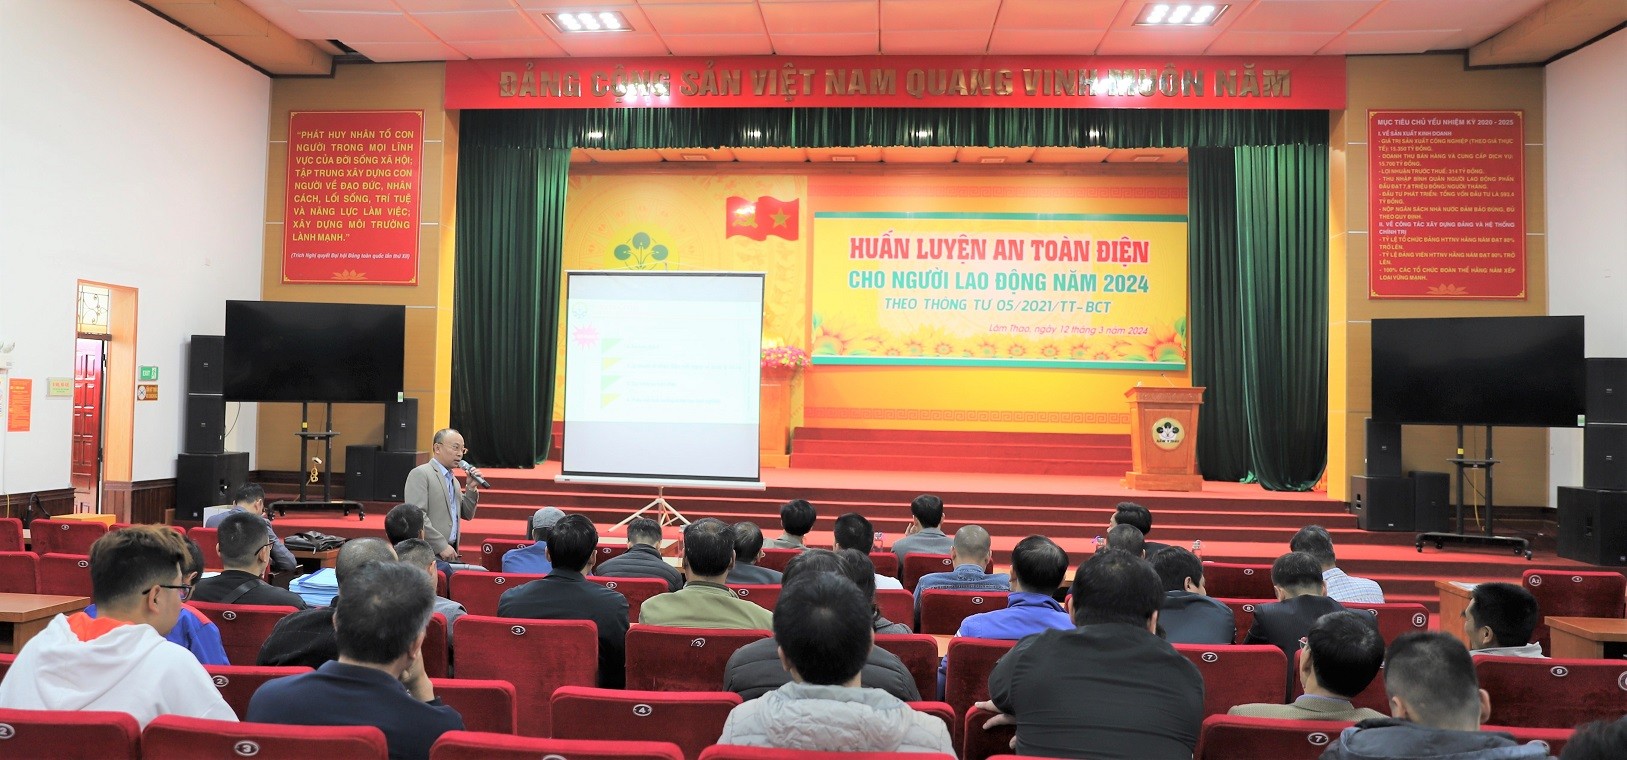 Supe Lâm Thao tổ chức Khai mạc lớp Huấn luyện An toàn điện cho 170 học viên năm 2024